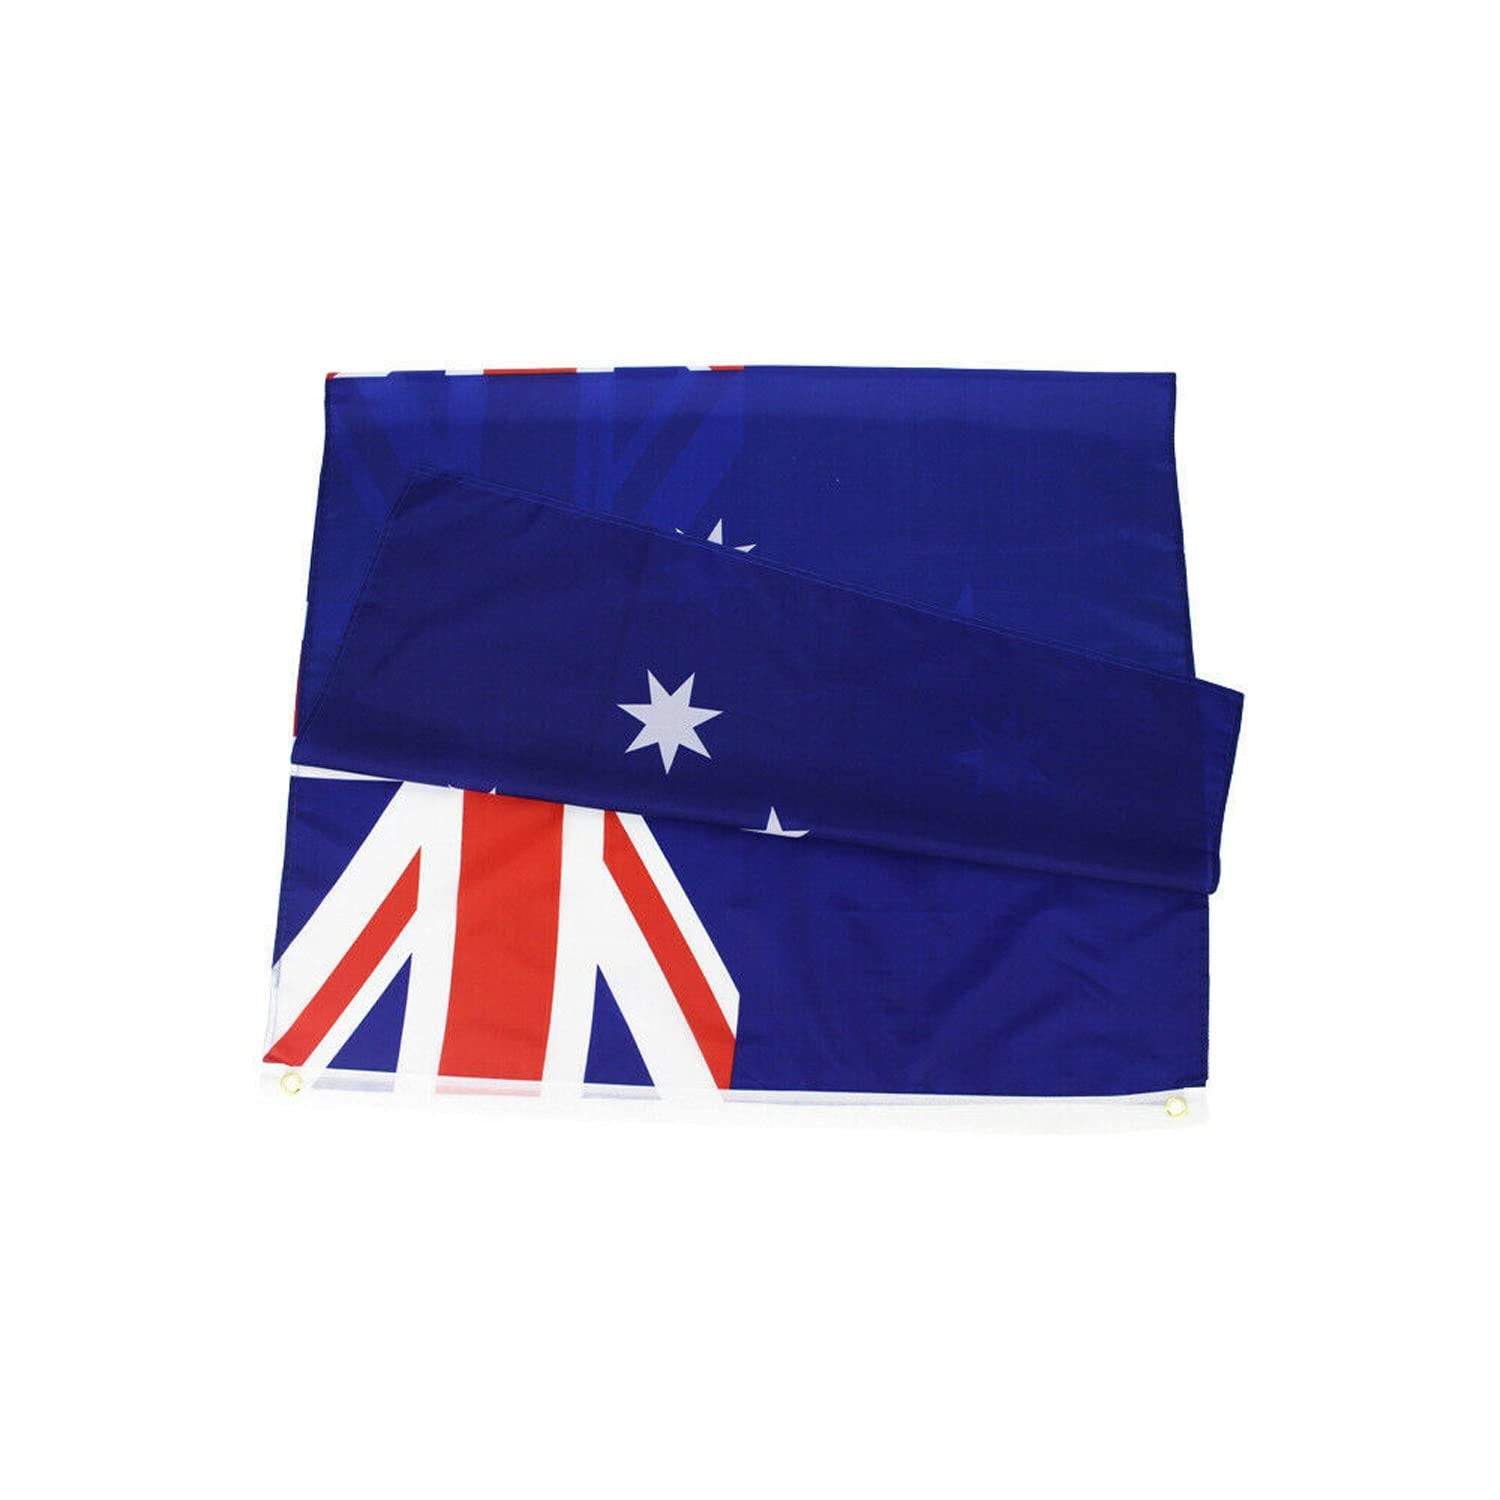 Yotsuba, Large Australian Flag Outdoor Australia Day Party Aussie Oz Aus Festival